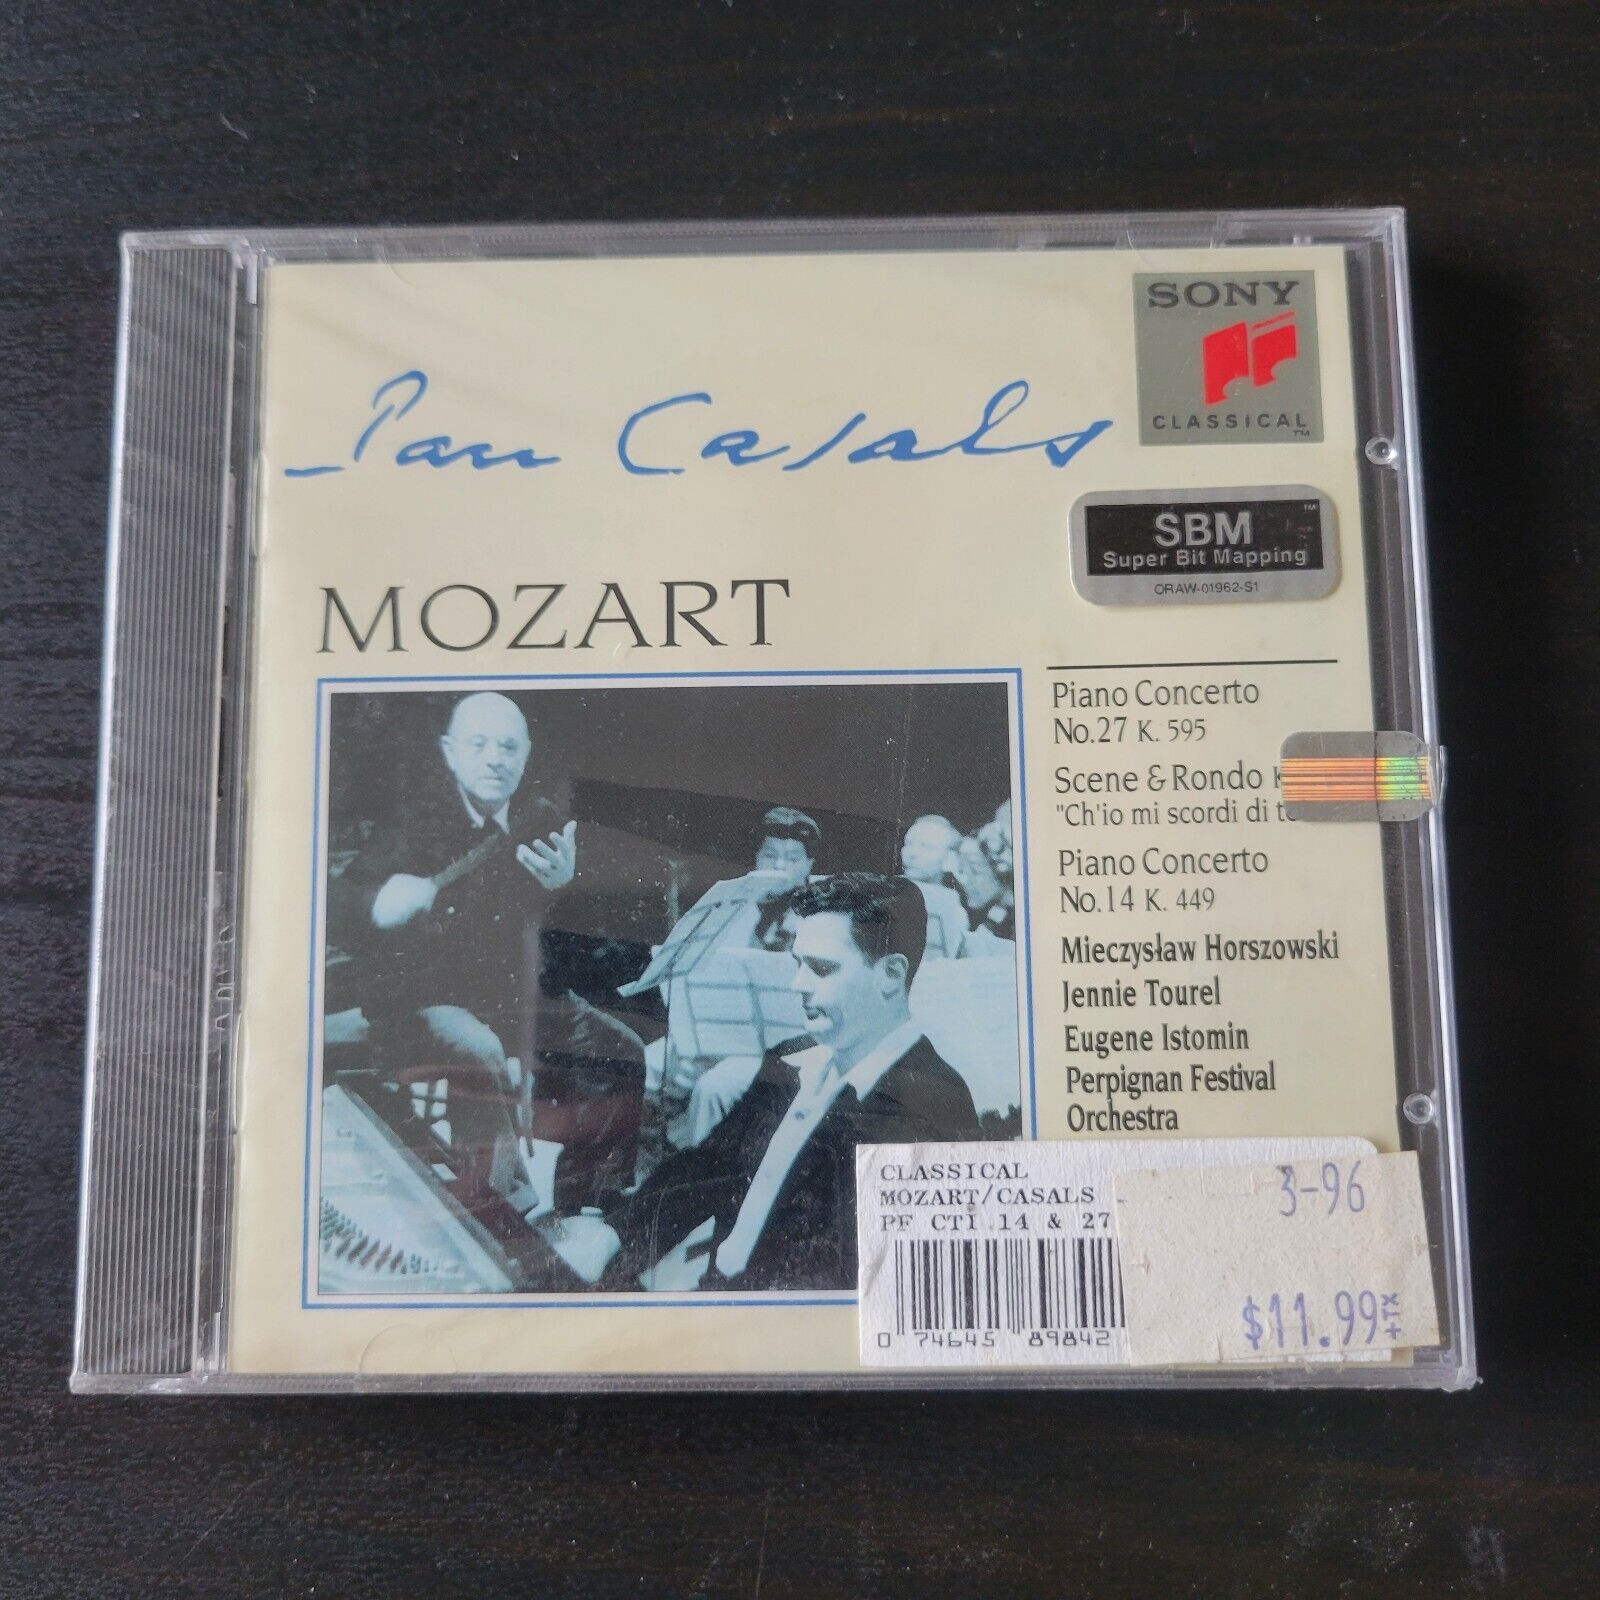 [NEW & FACTORY SEALED] MOZART | Casals Edition / Piano Concerto No. 27 k. 595